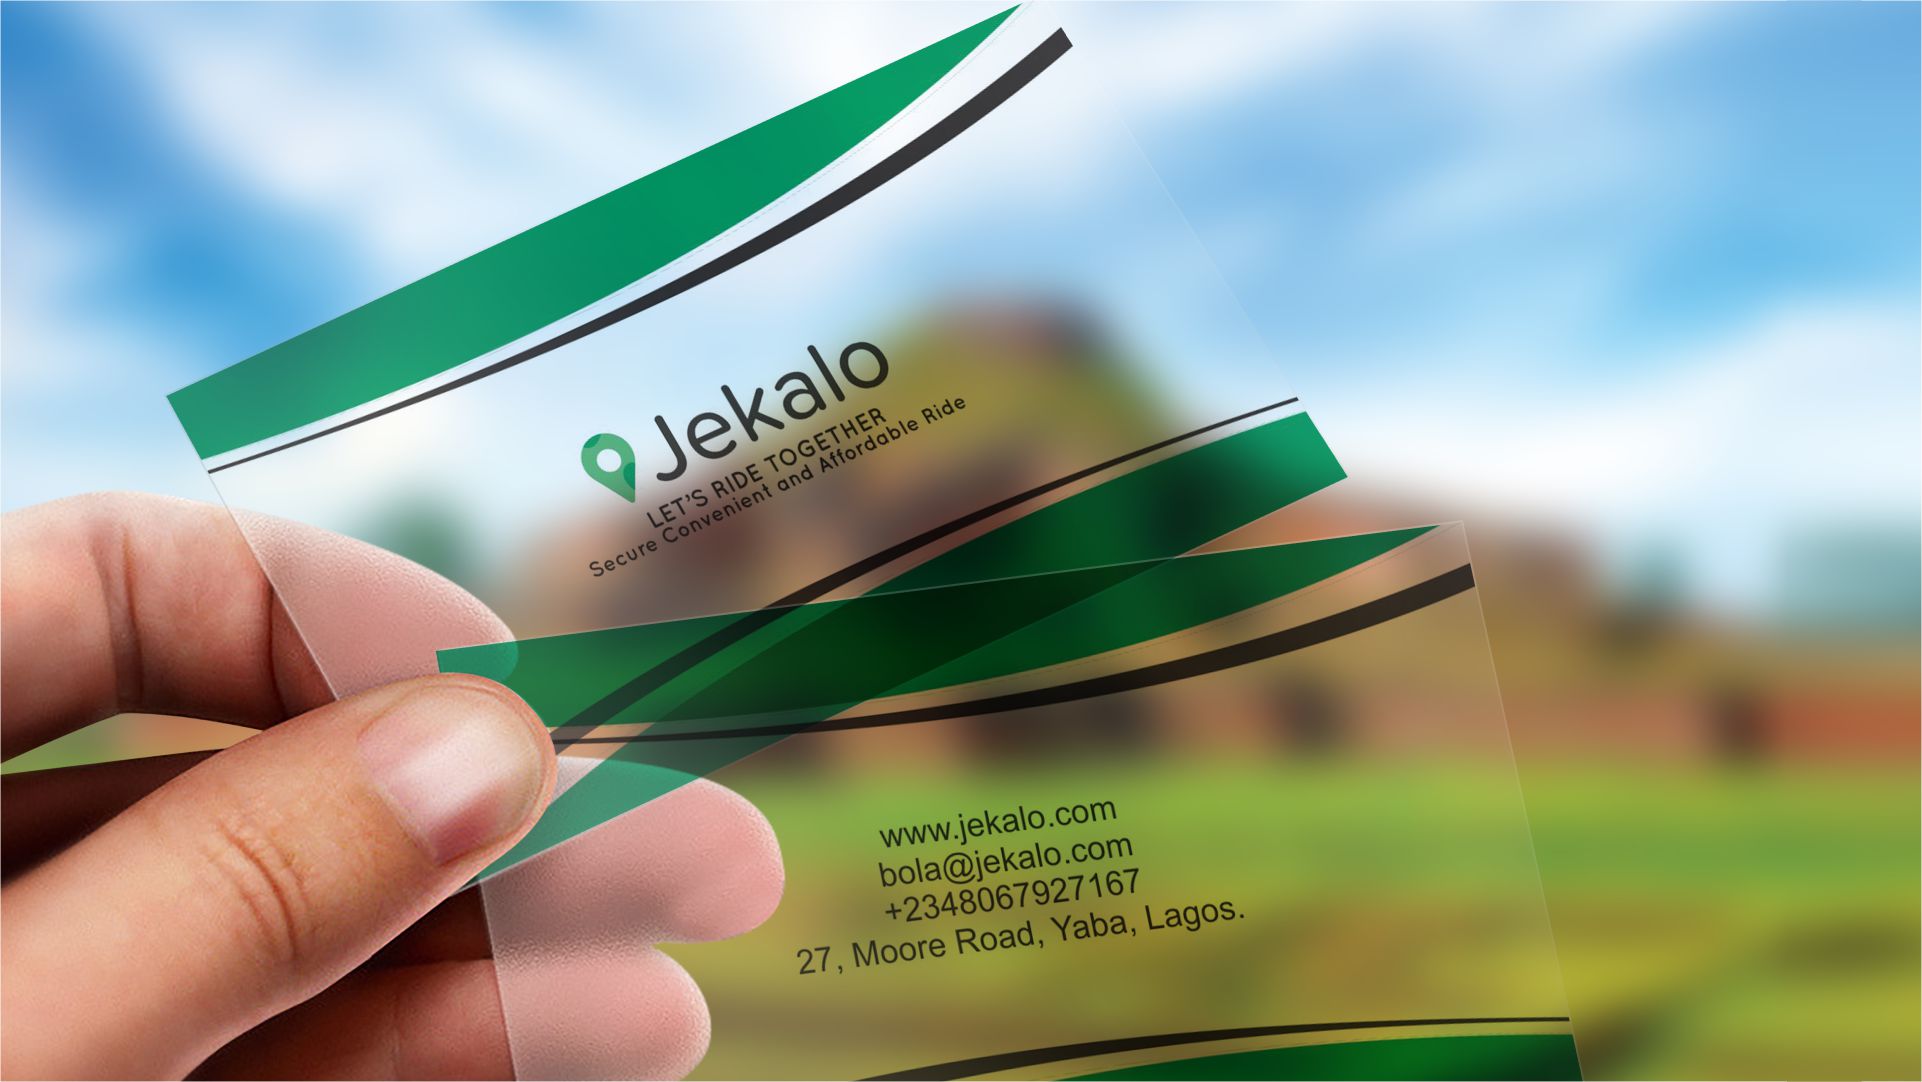 Translucent plastic Business Card printing and design in Lagos Nigeria